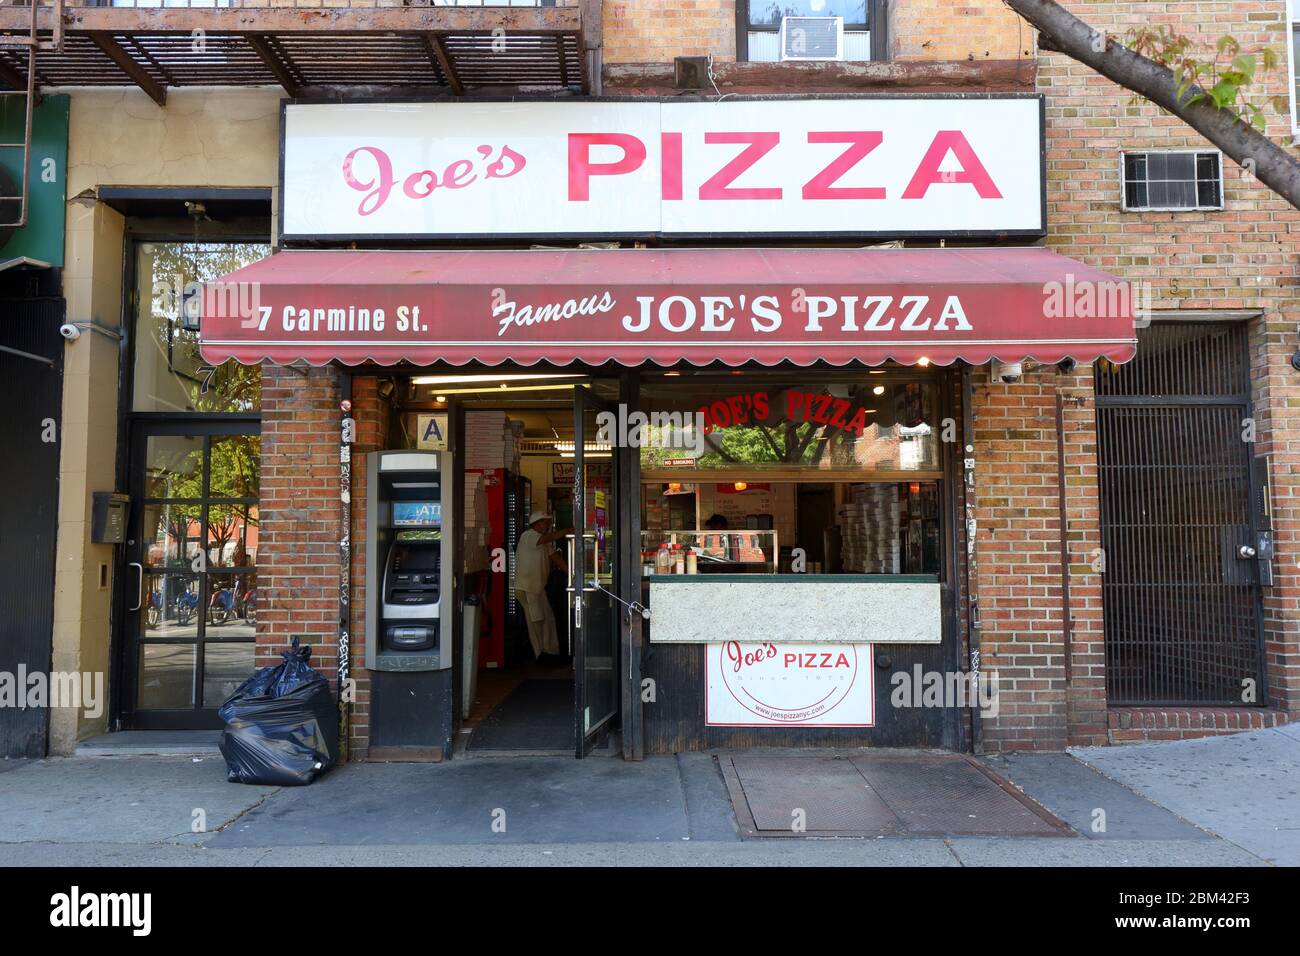 Joe's Pizza, 7 Carmine Street, New York, NYC Foto von einem Pizzaladen im West Village-Viertel von Manhattan. Stockfoto